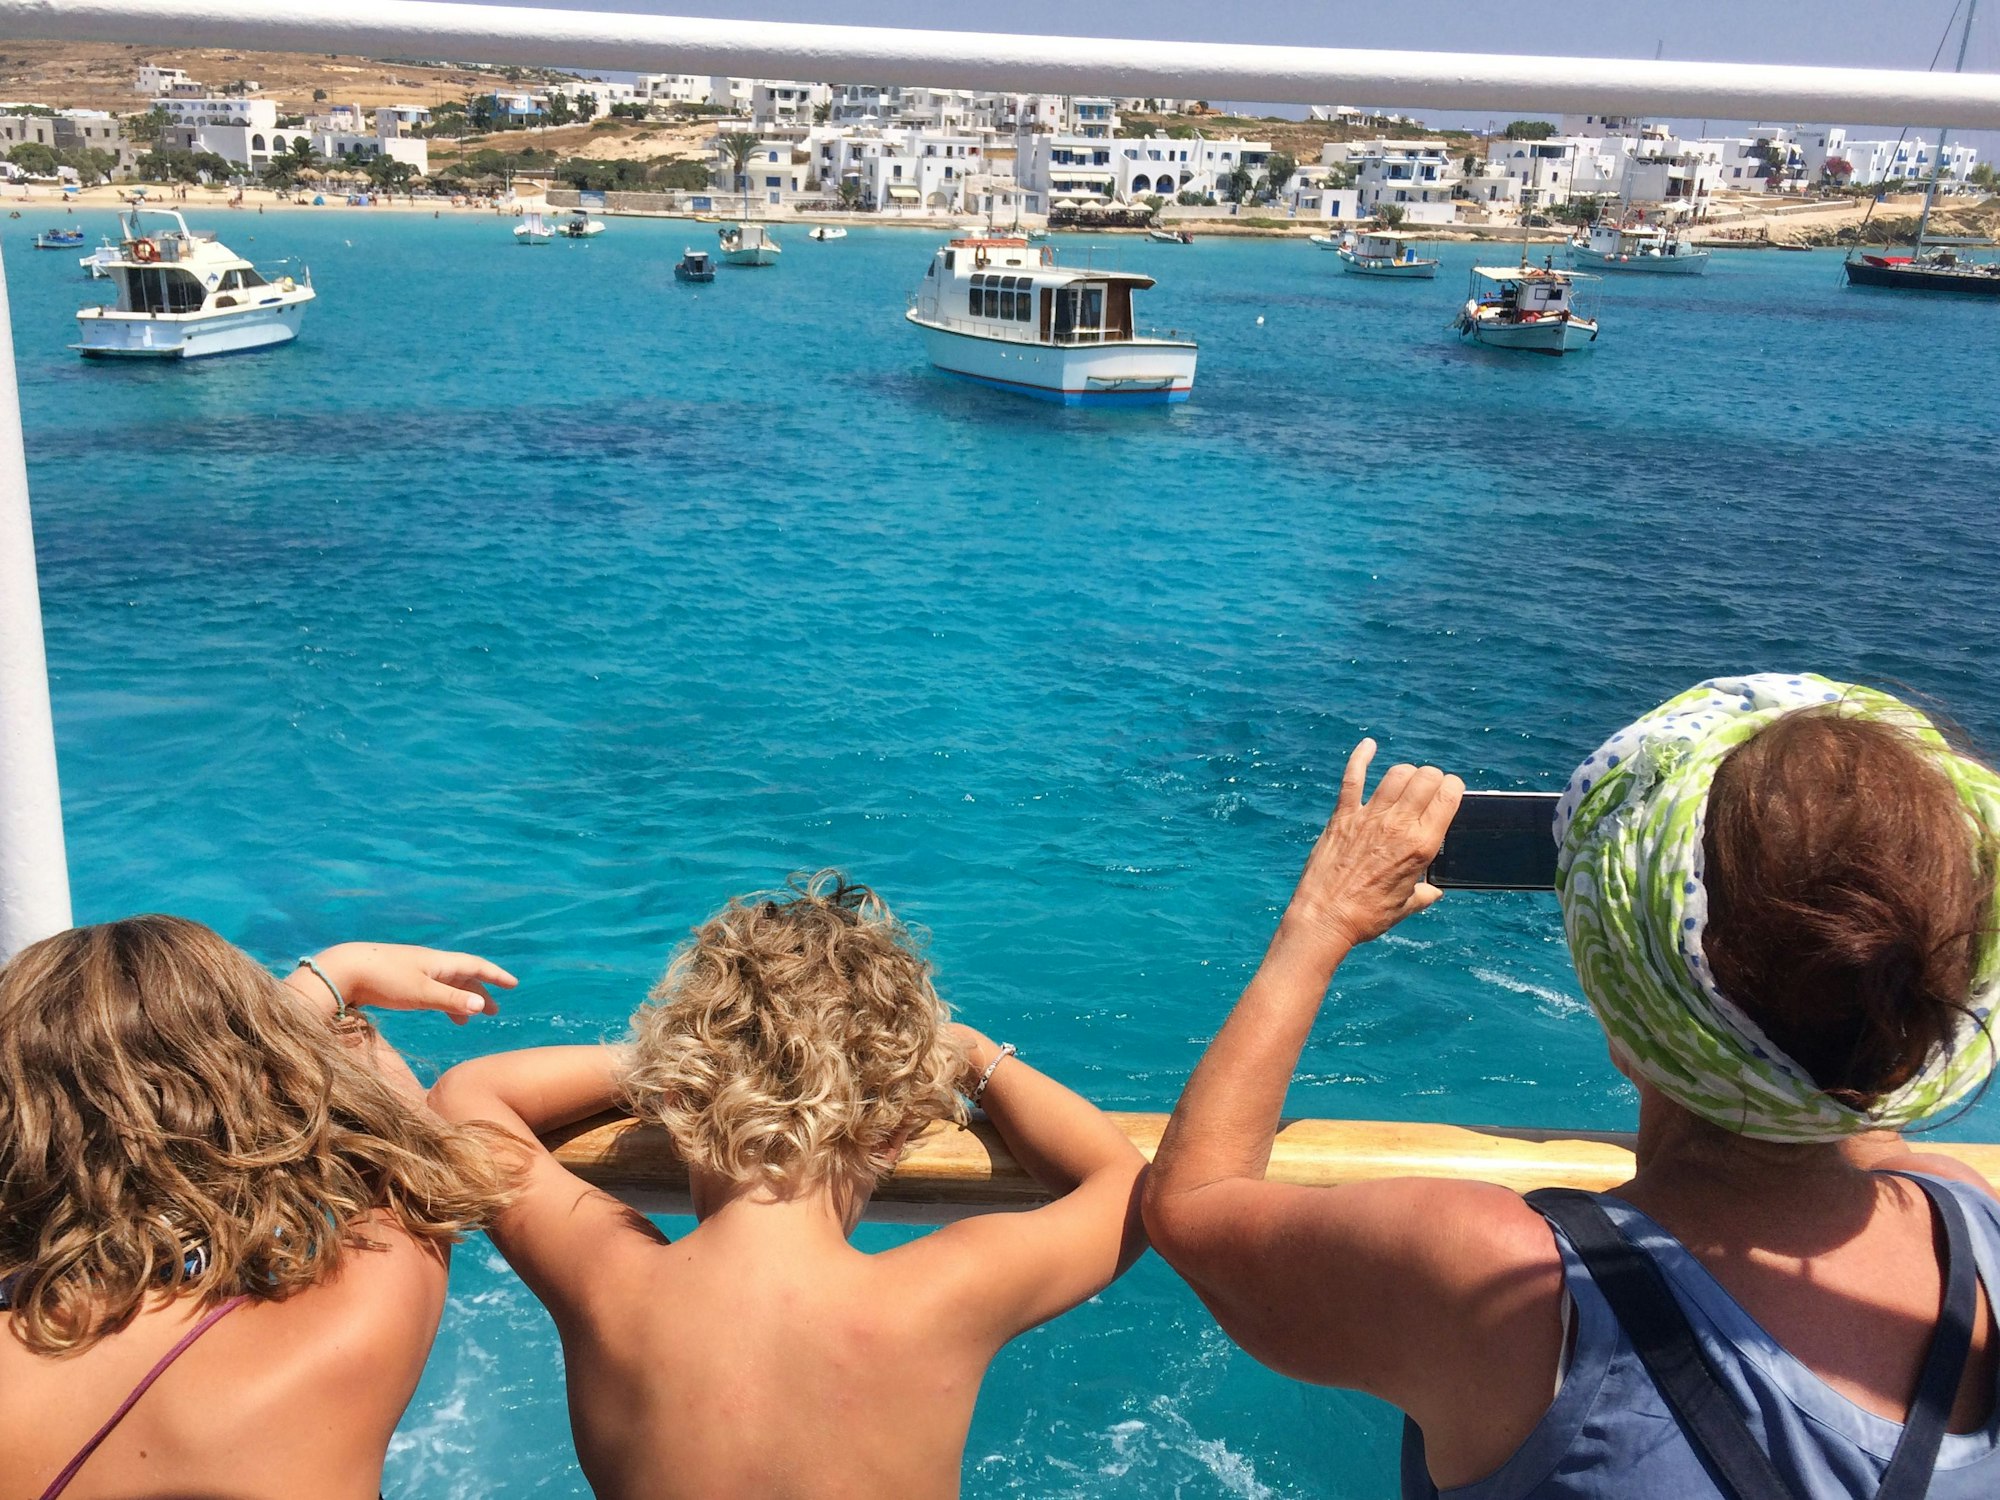 ARCHIV - Deutsche Touristen blicken am 07.08.2017 von einem Ausflugsschiff auf das türkisblaue Wasser im Hafen der Kykladen-Insel Kufonissi (Griechenland).